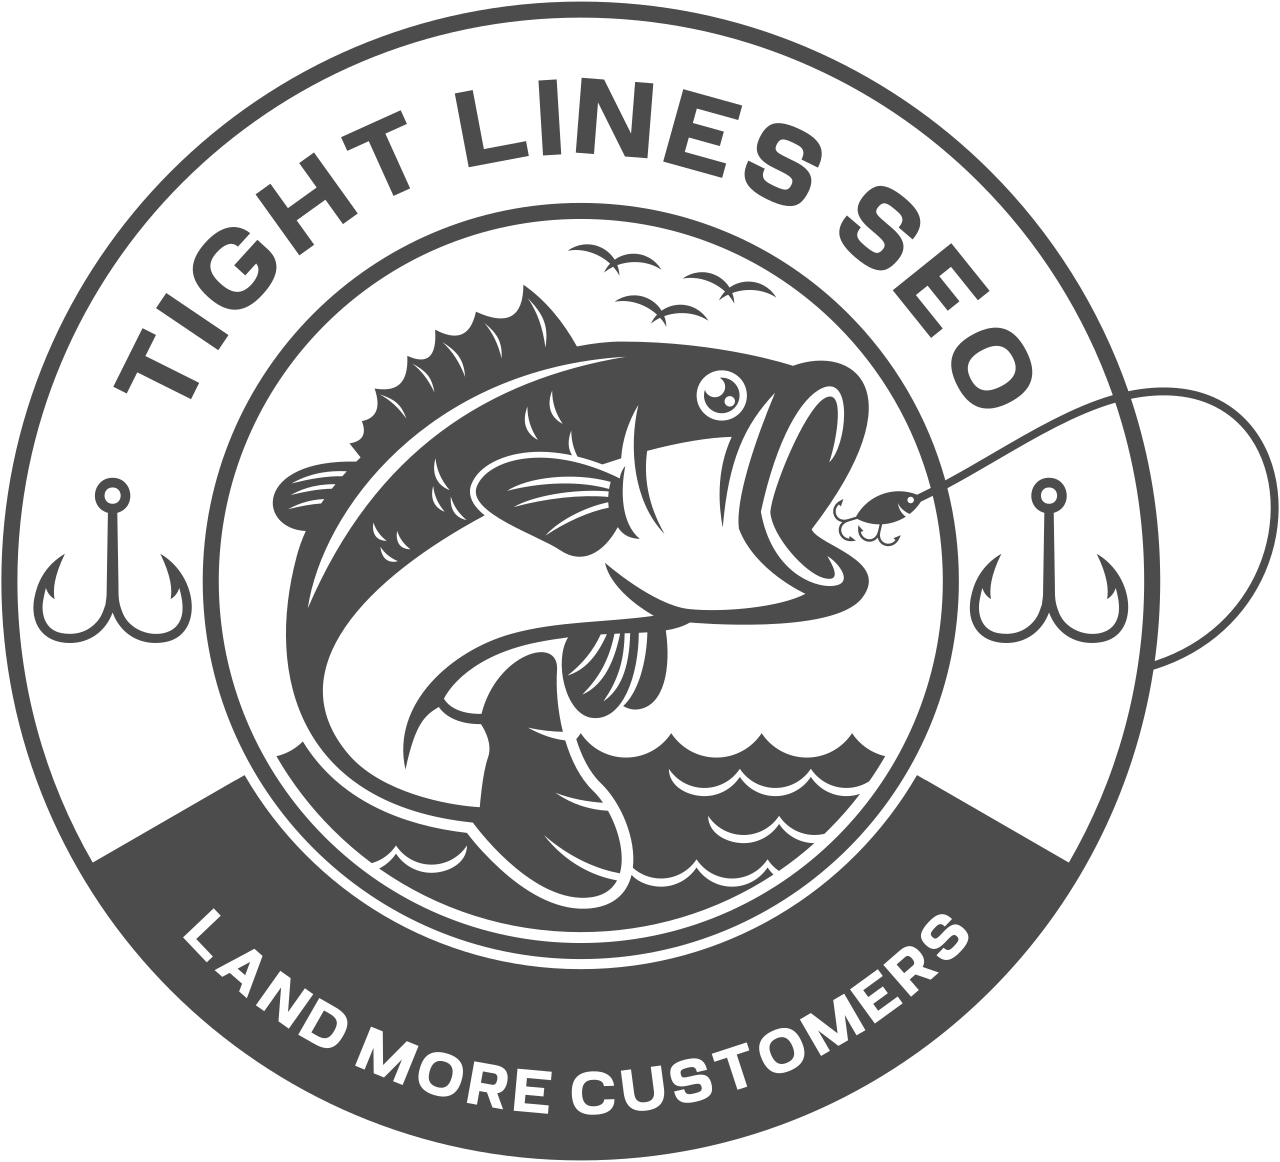 TIGHT LINES SEO's logo